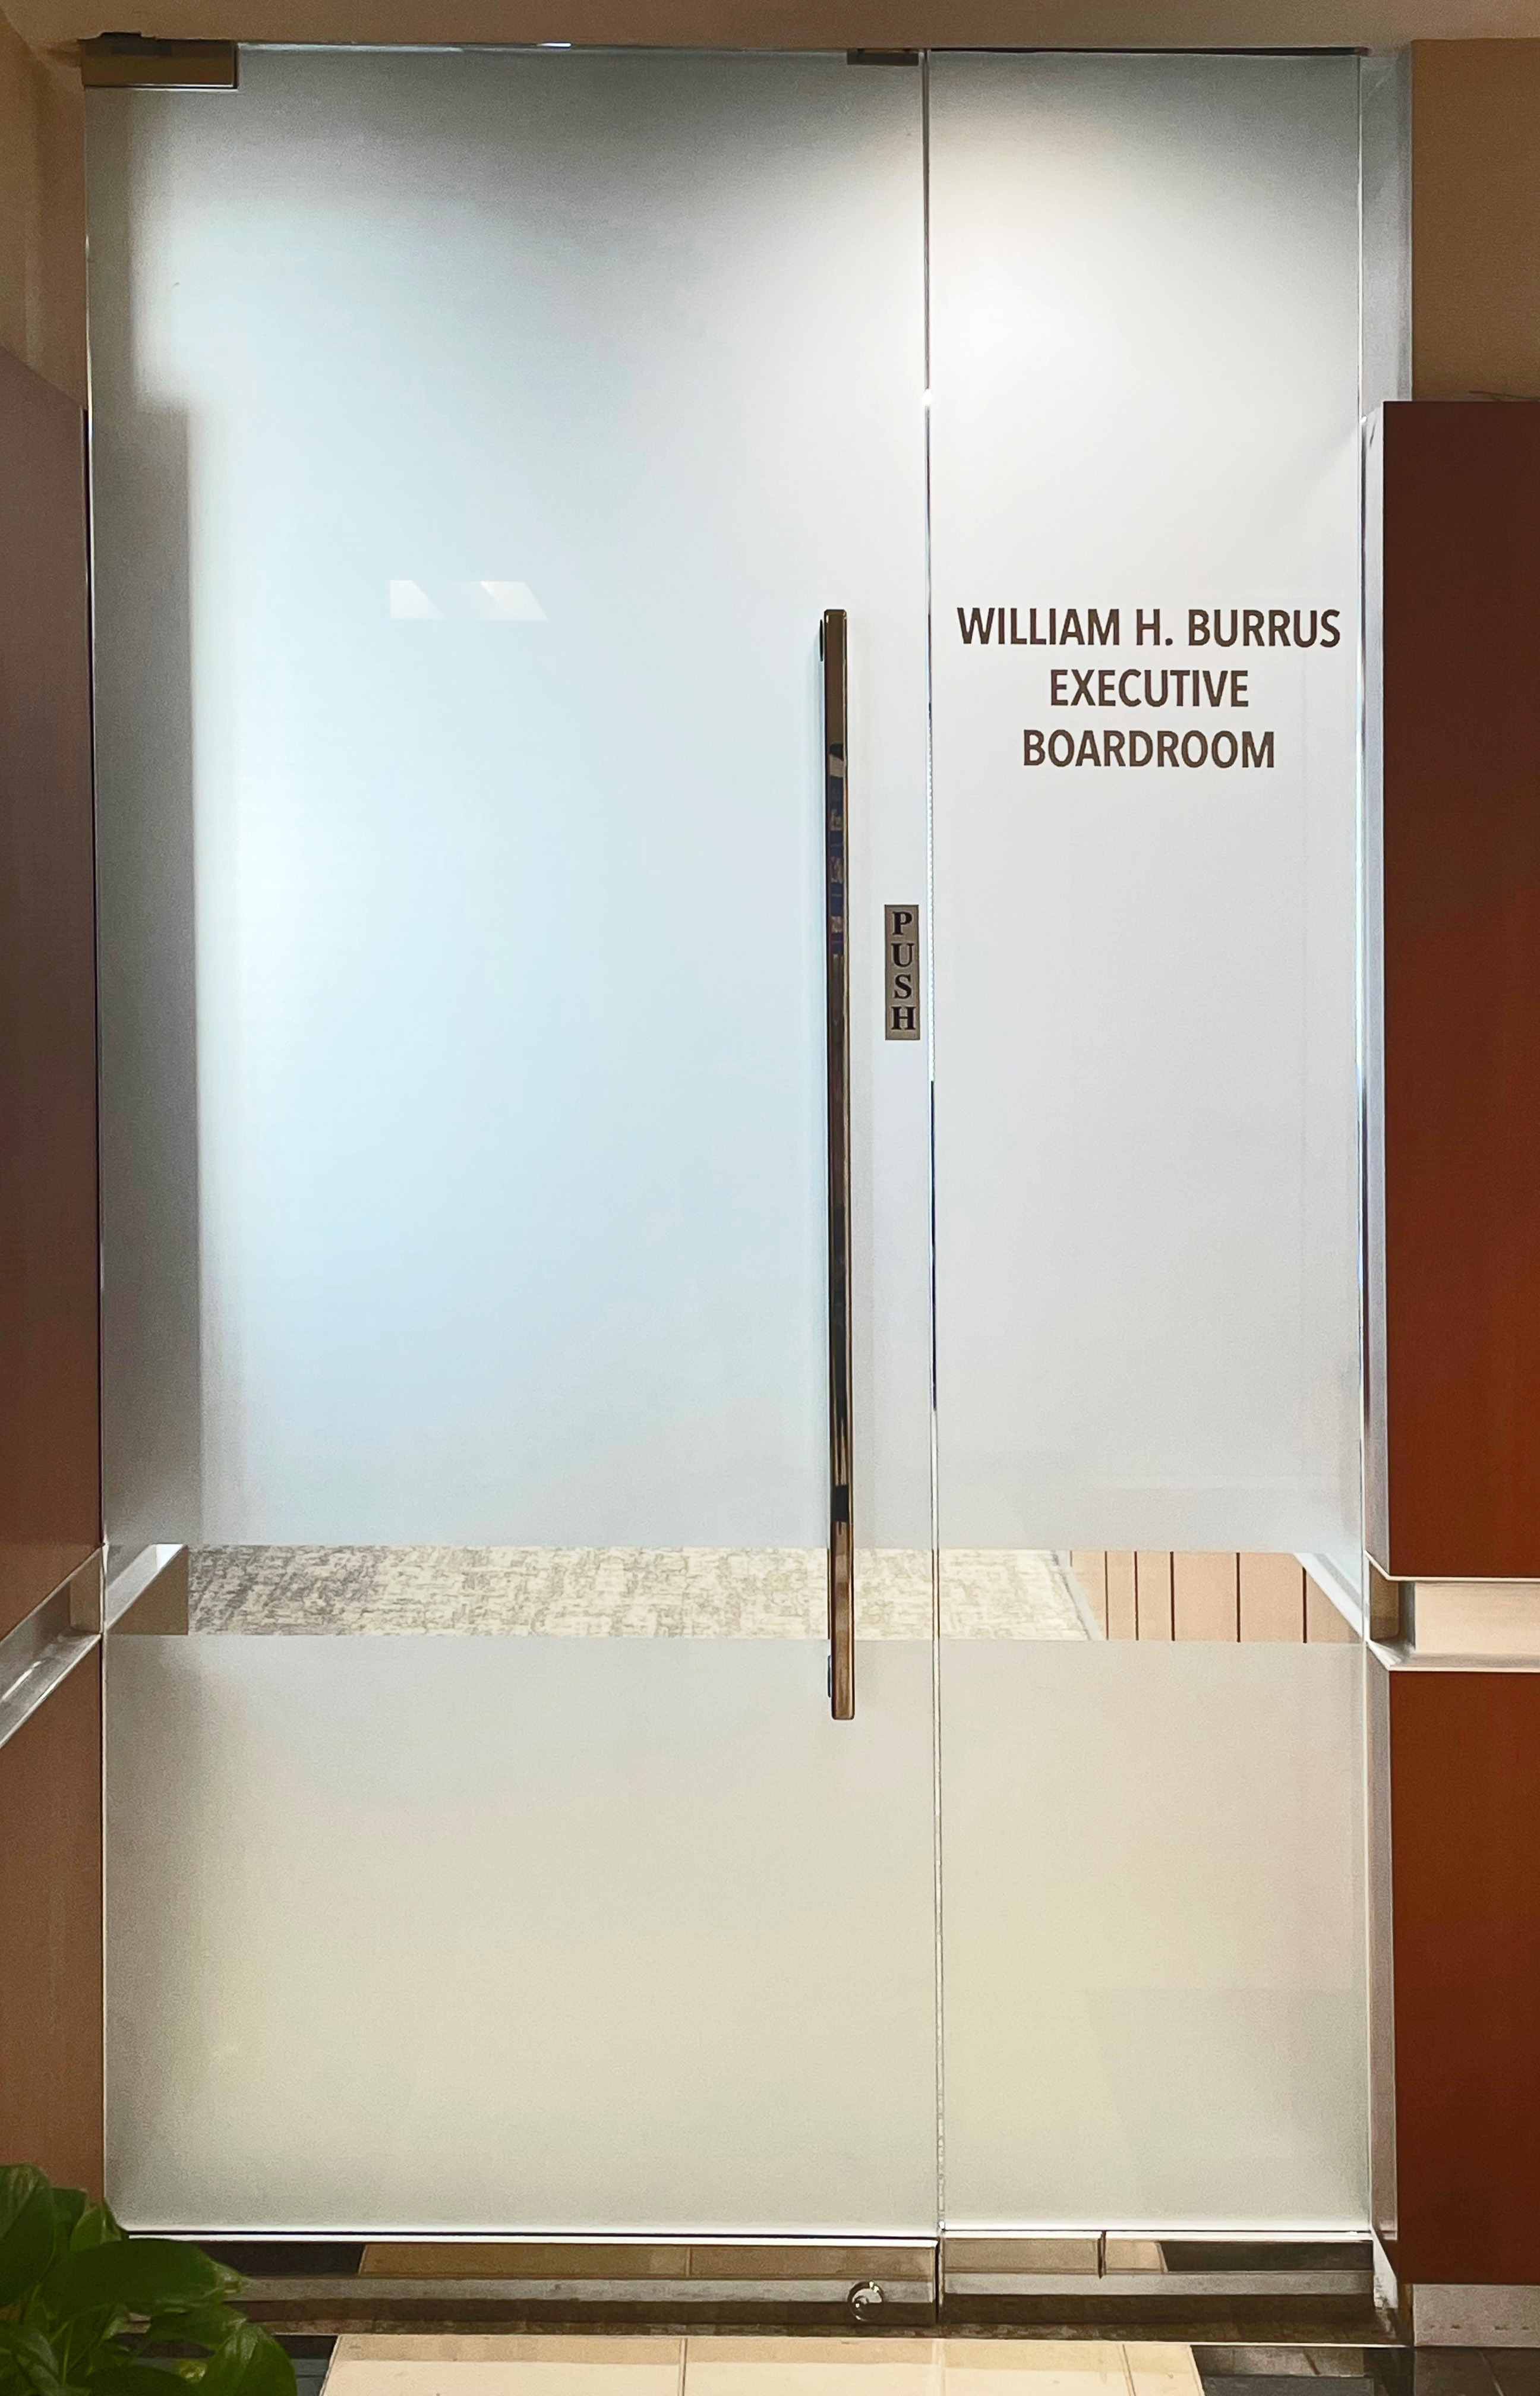 William H. Burrus Executive Boardroom